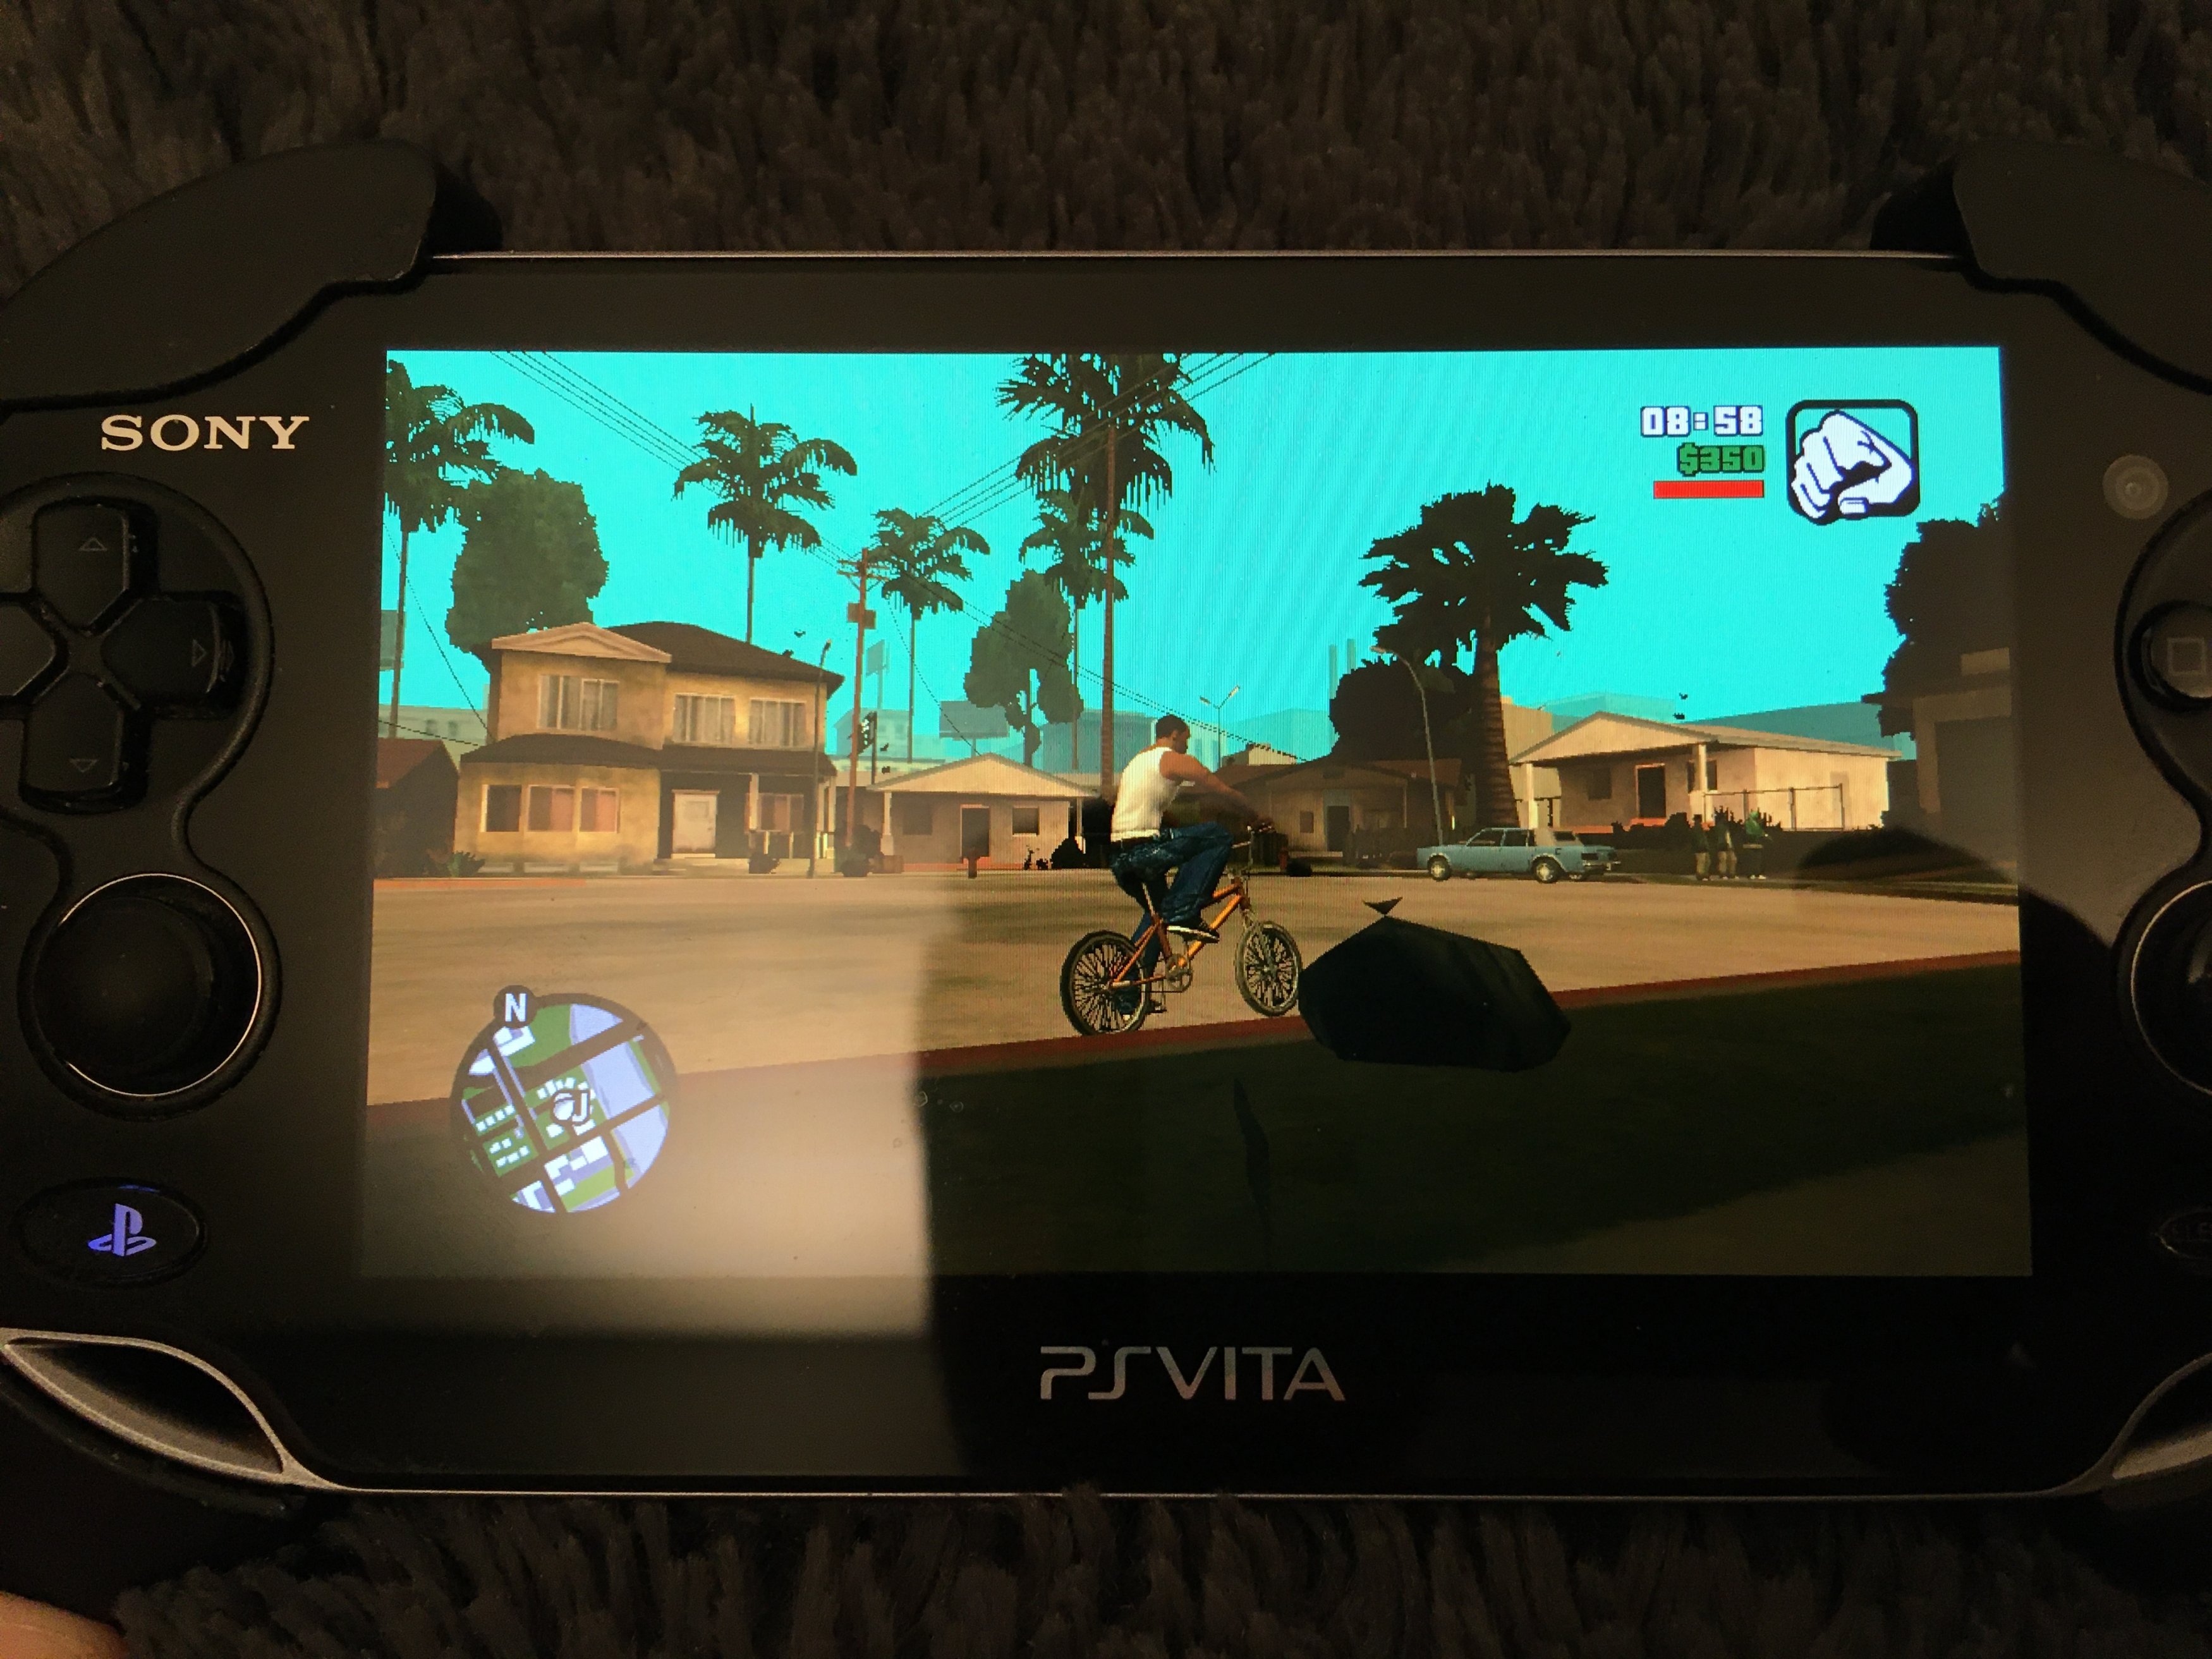 PS Vita - GTA:SA Vita updated to 2.1 (GTA San Andreas Port by TheFloW) 